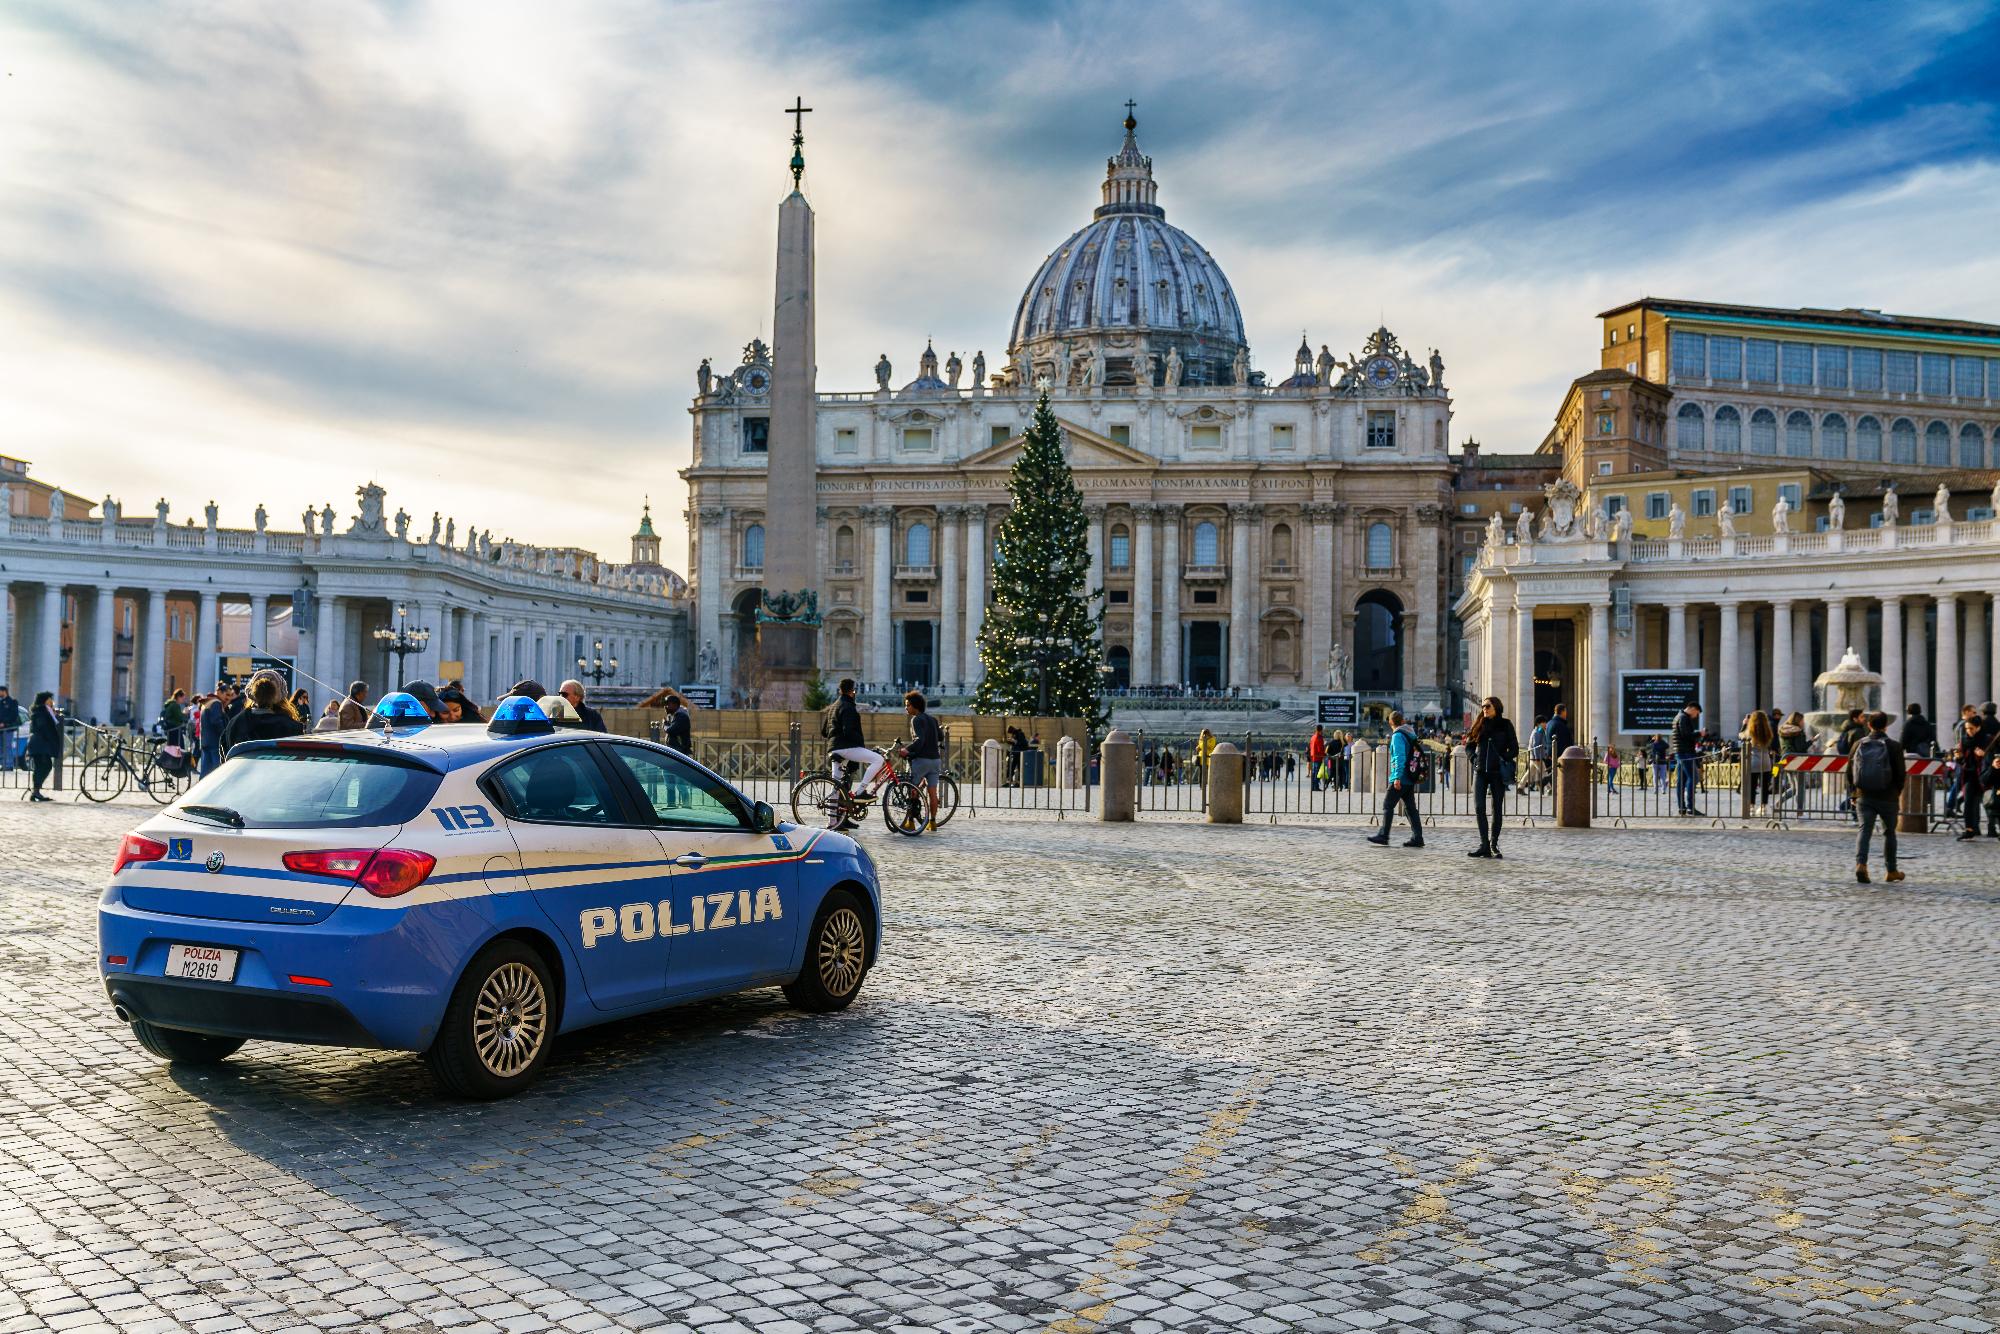 A Vatikán körül is megerősítették a biztonsági készültséget